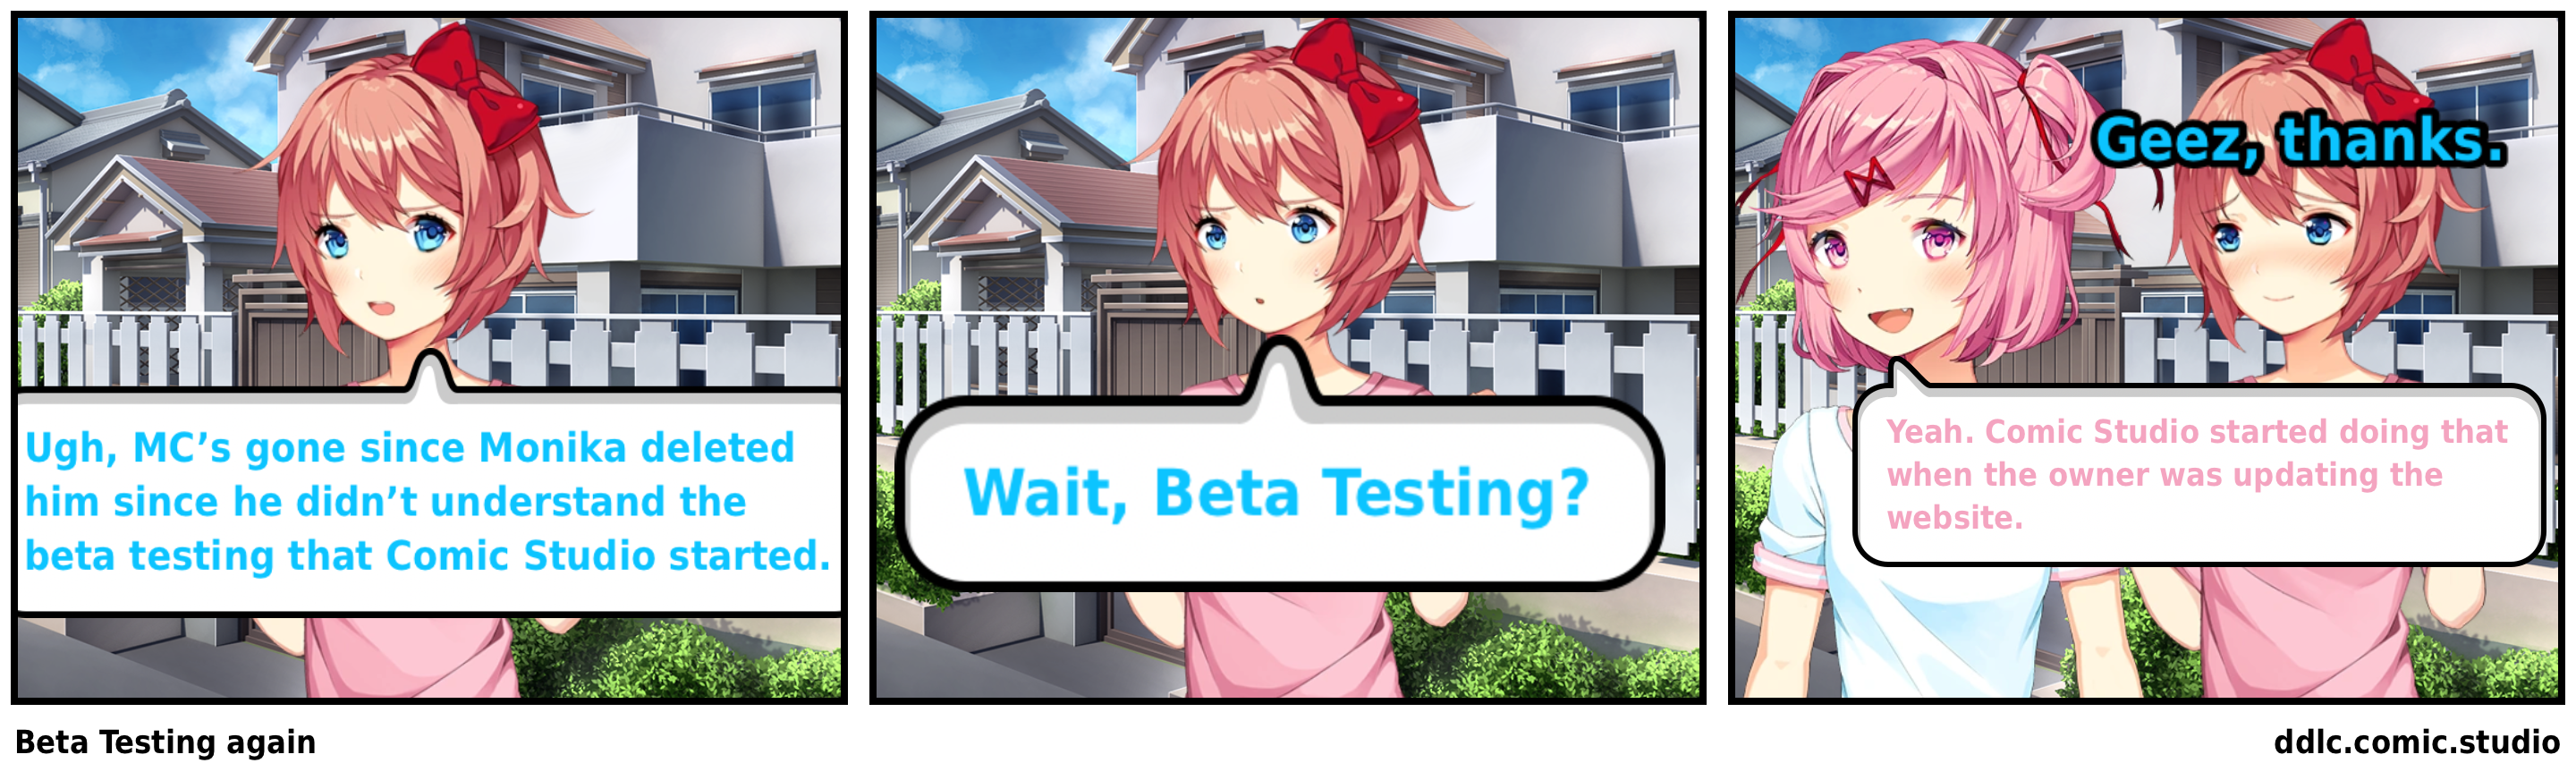 Beta Testing again